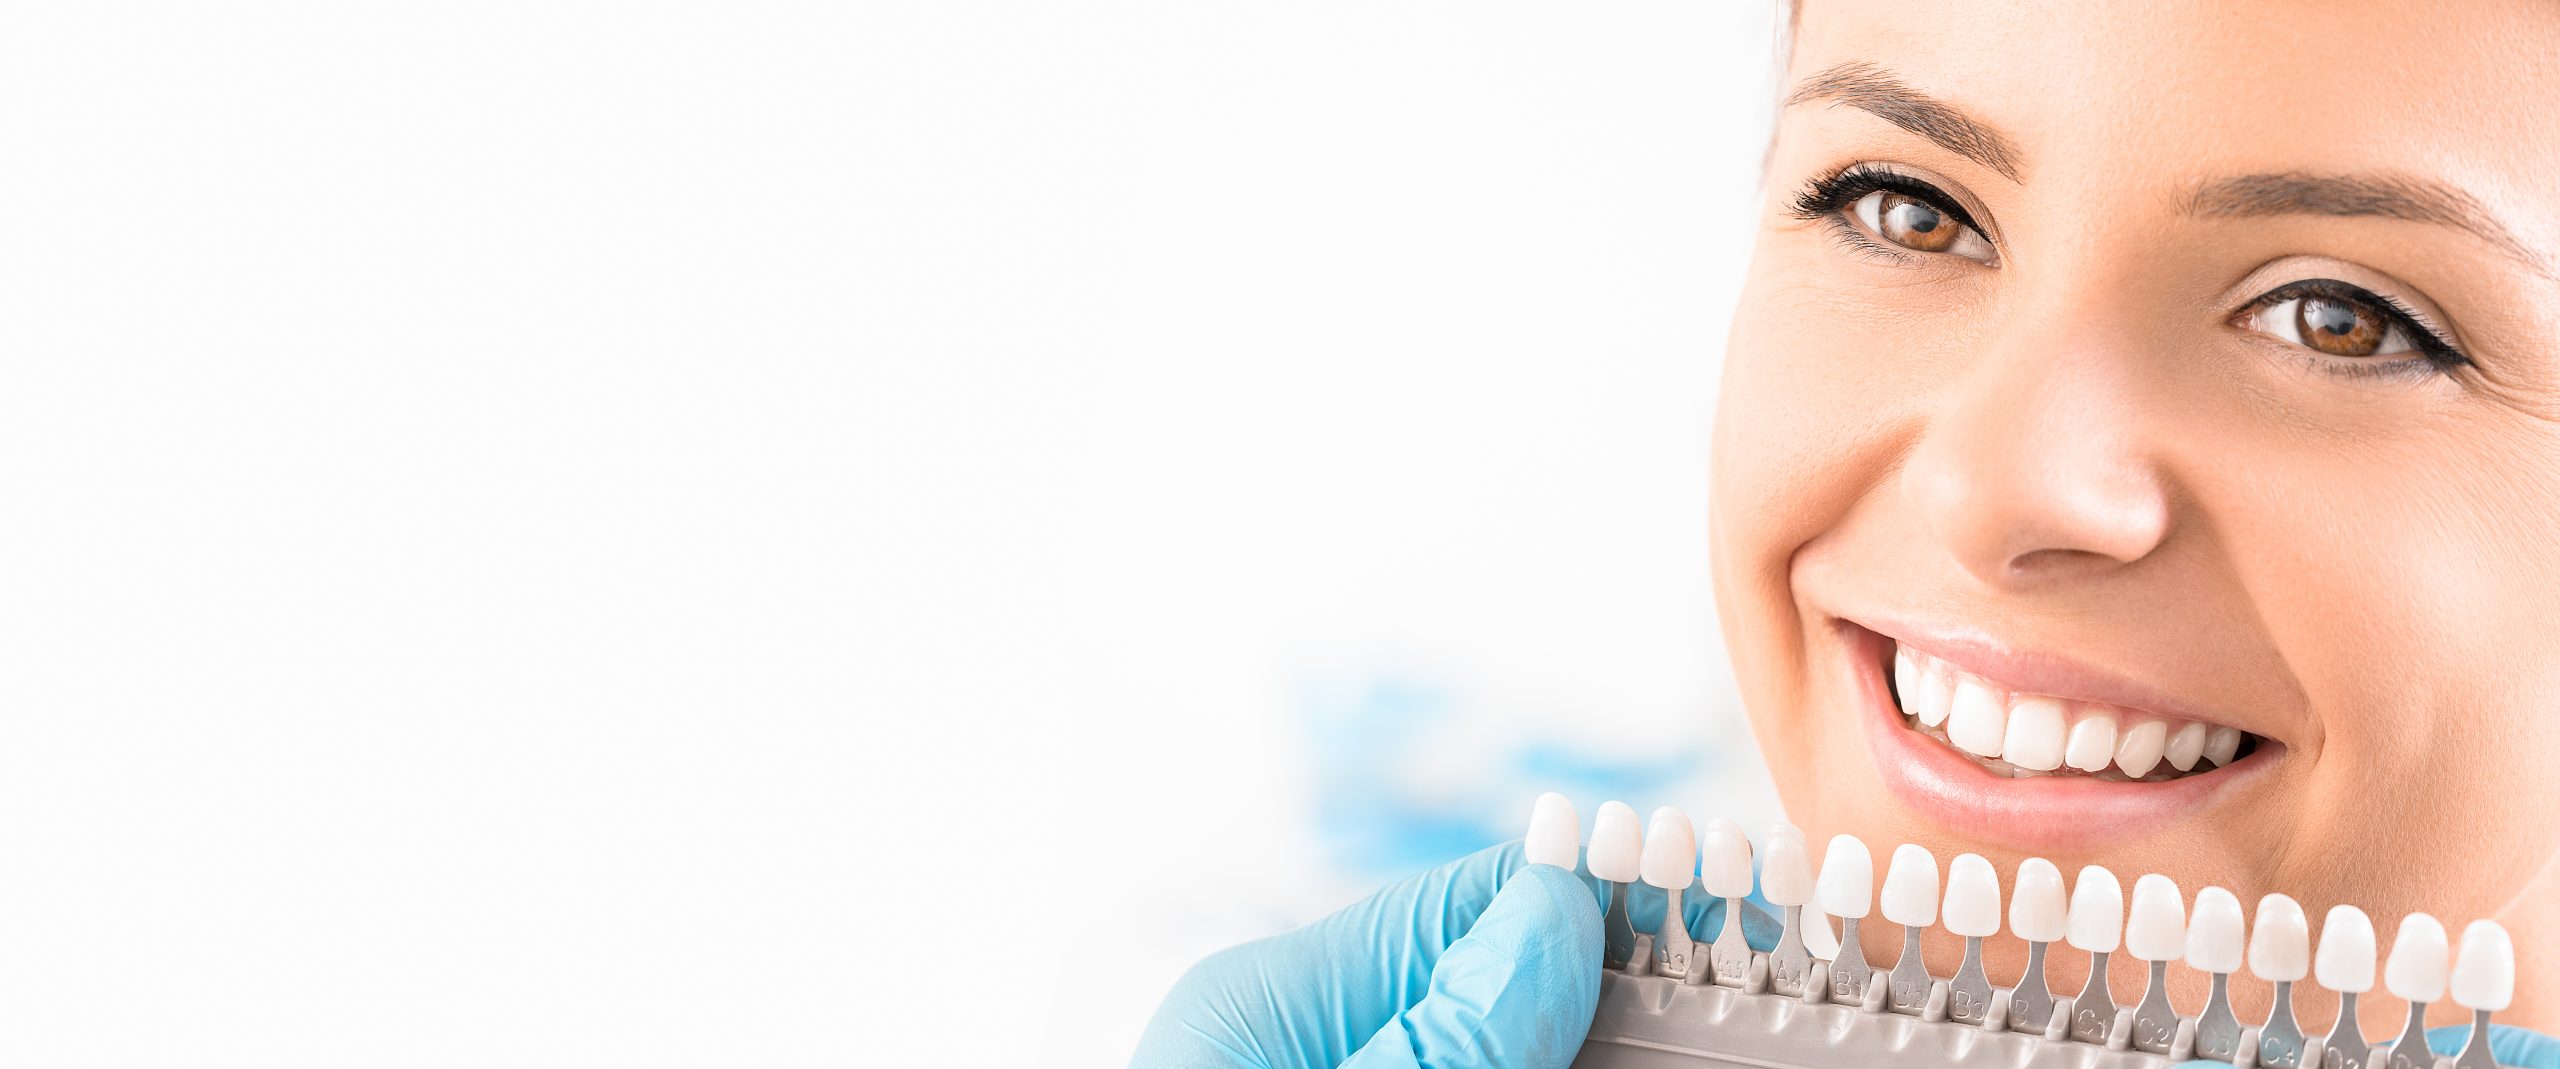 Εμφυτεύματα Δοντιών: Η Πιο Αξιόπιστη Και Ασφαλής Μέθοδος για την Αποκατάσταση Χαμένων Δοντιών